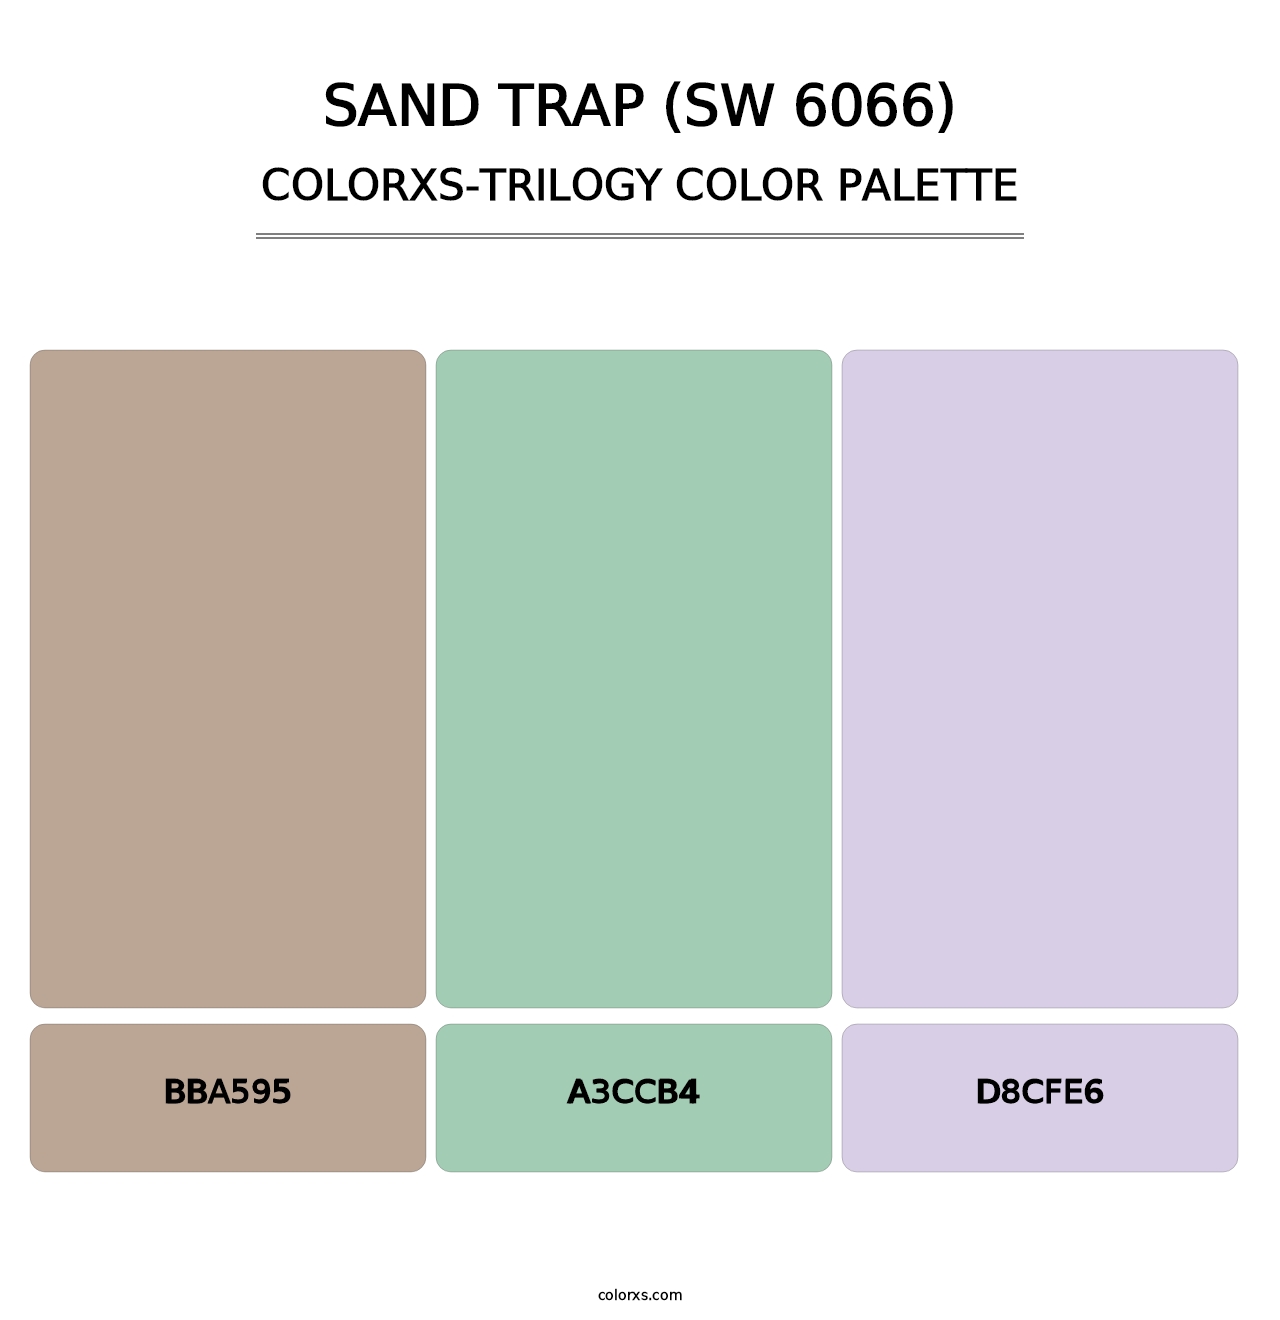 Sand Trap (SW 6066) - Colorxs Trilogy Palette